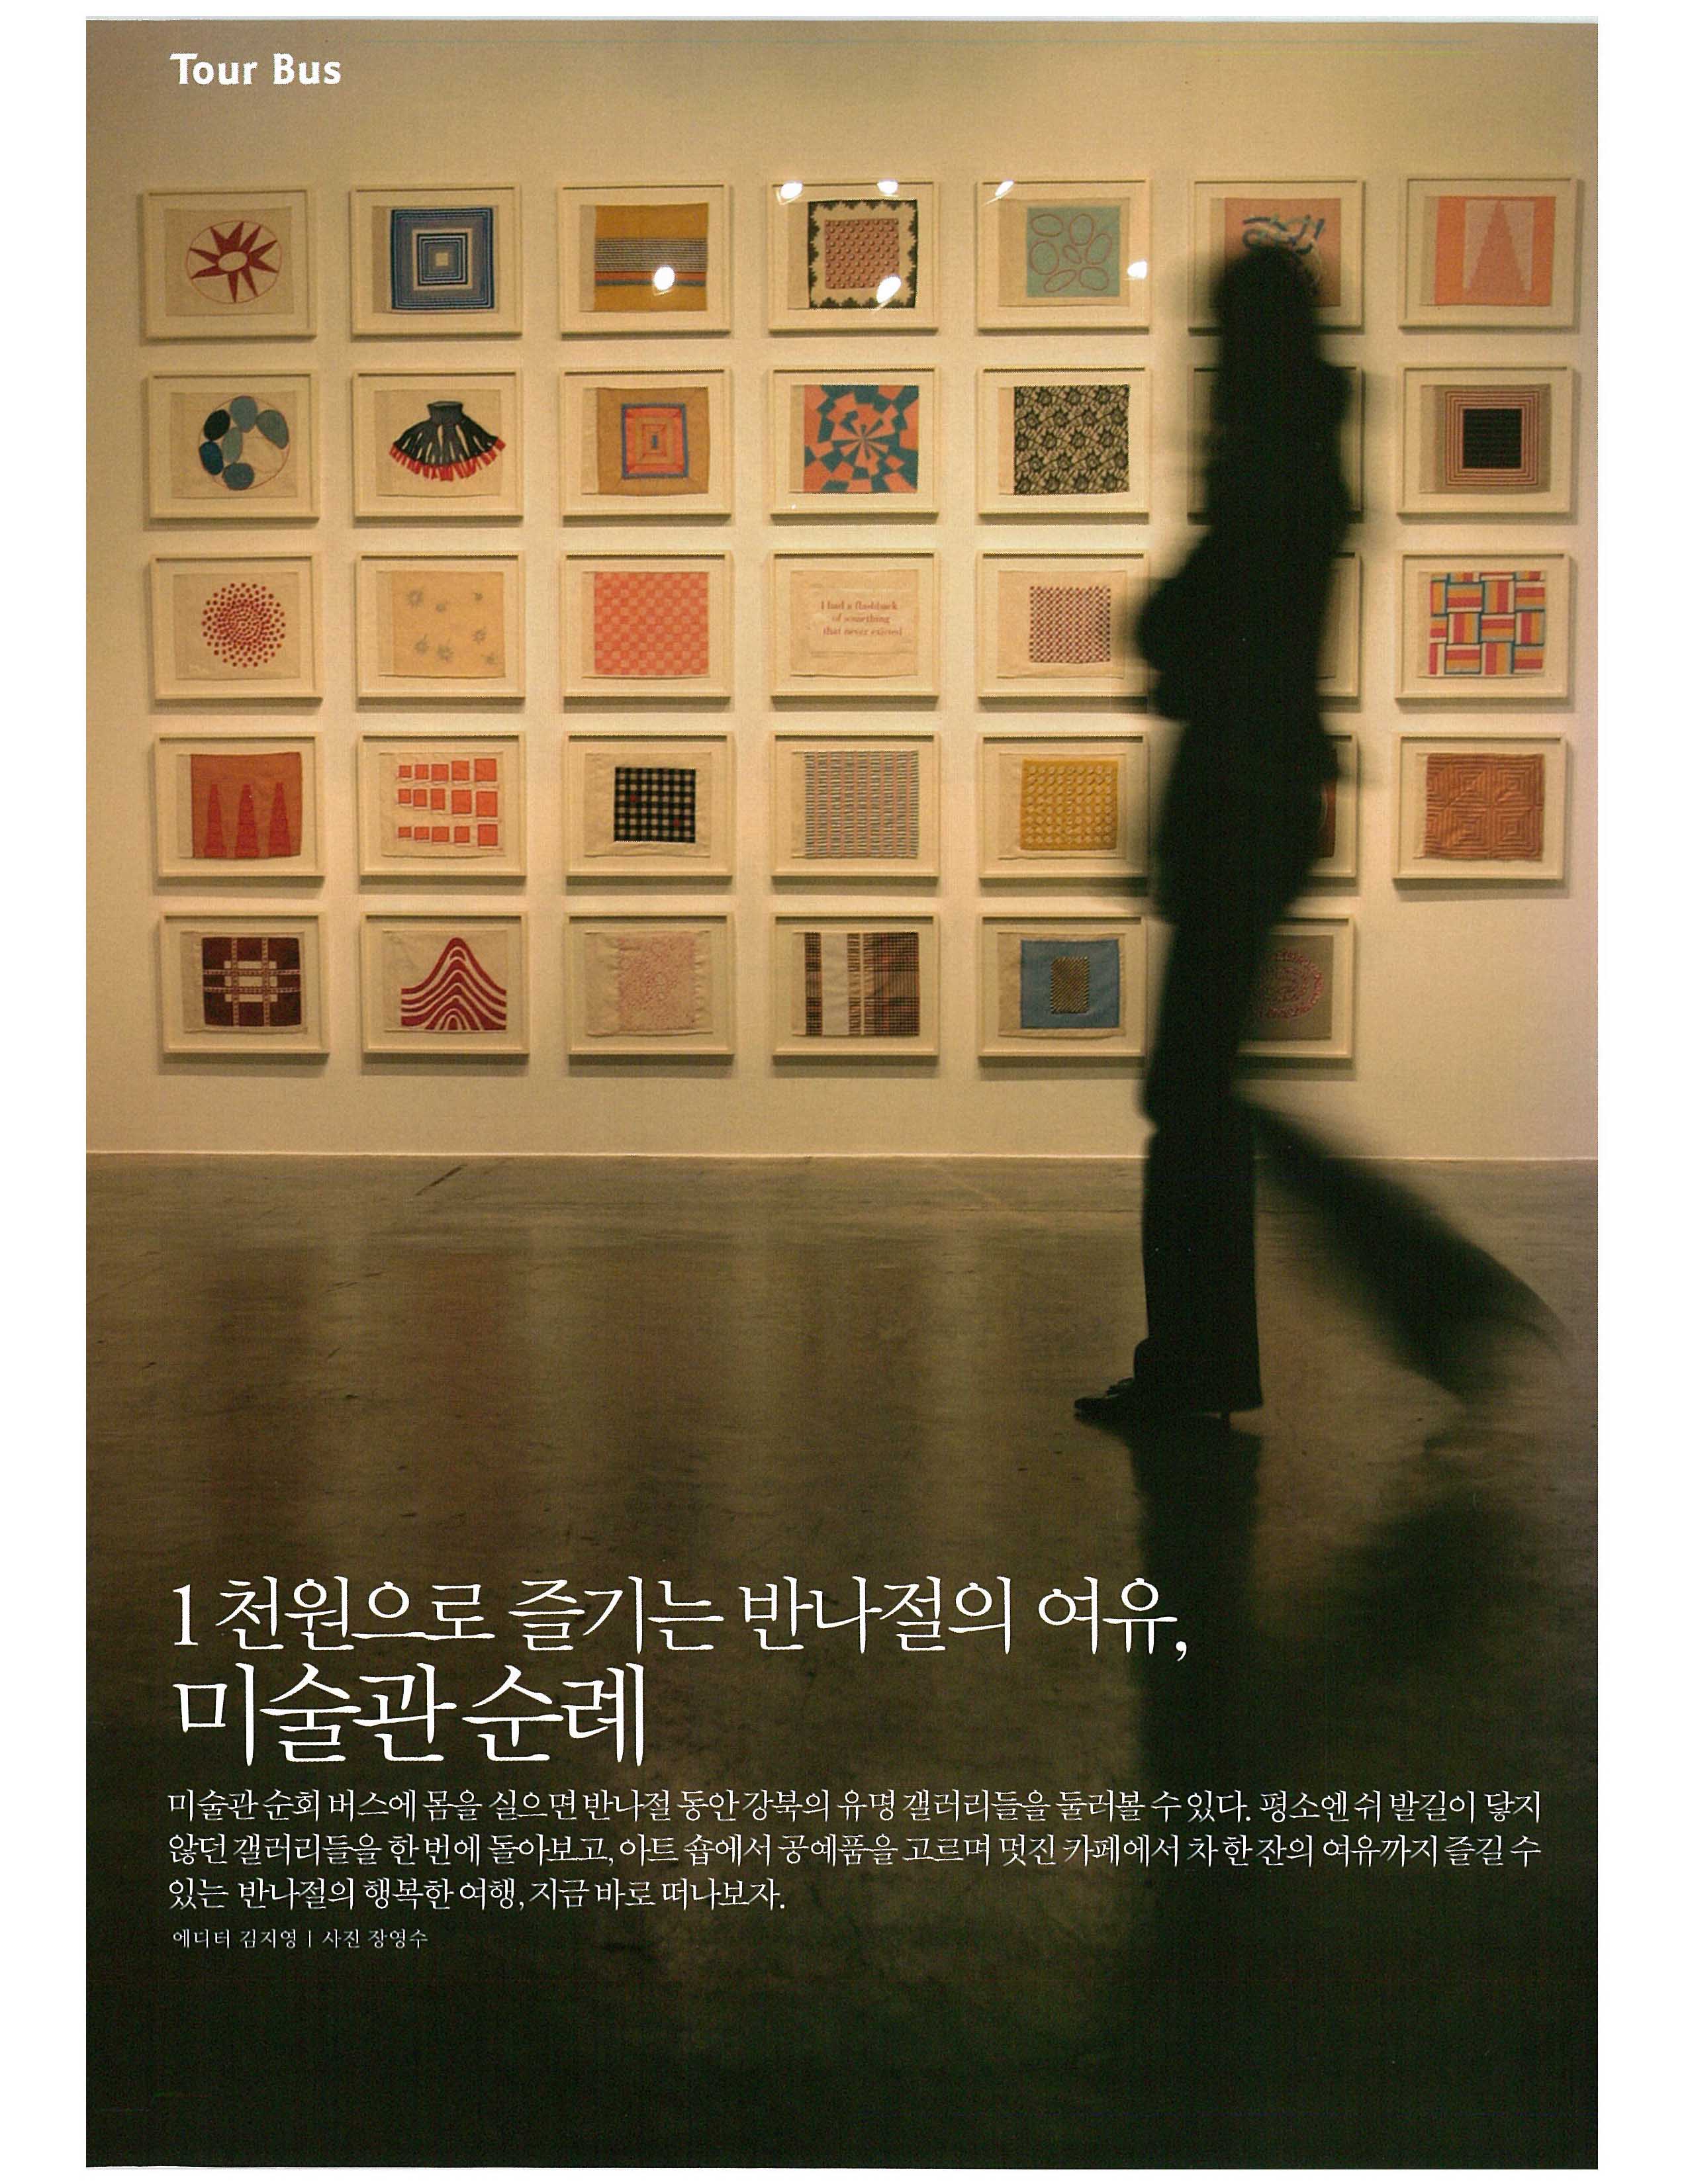 「1천원으로 즐기는 반나절의 여유, 미술관 순례」, 『KTX』